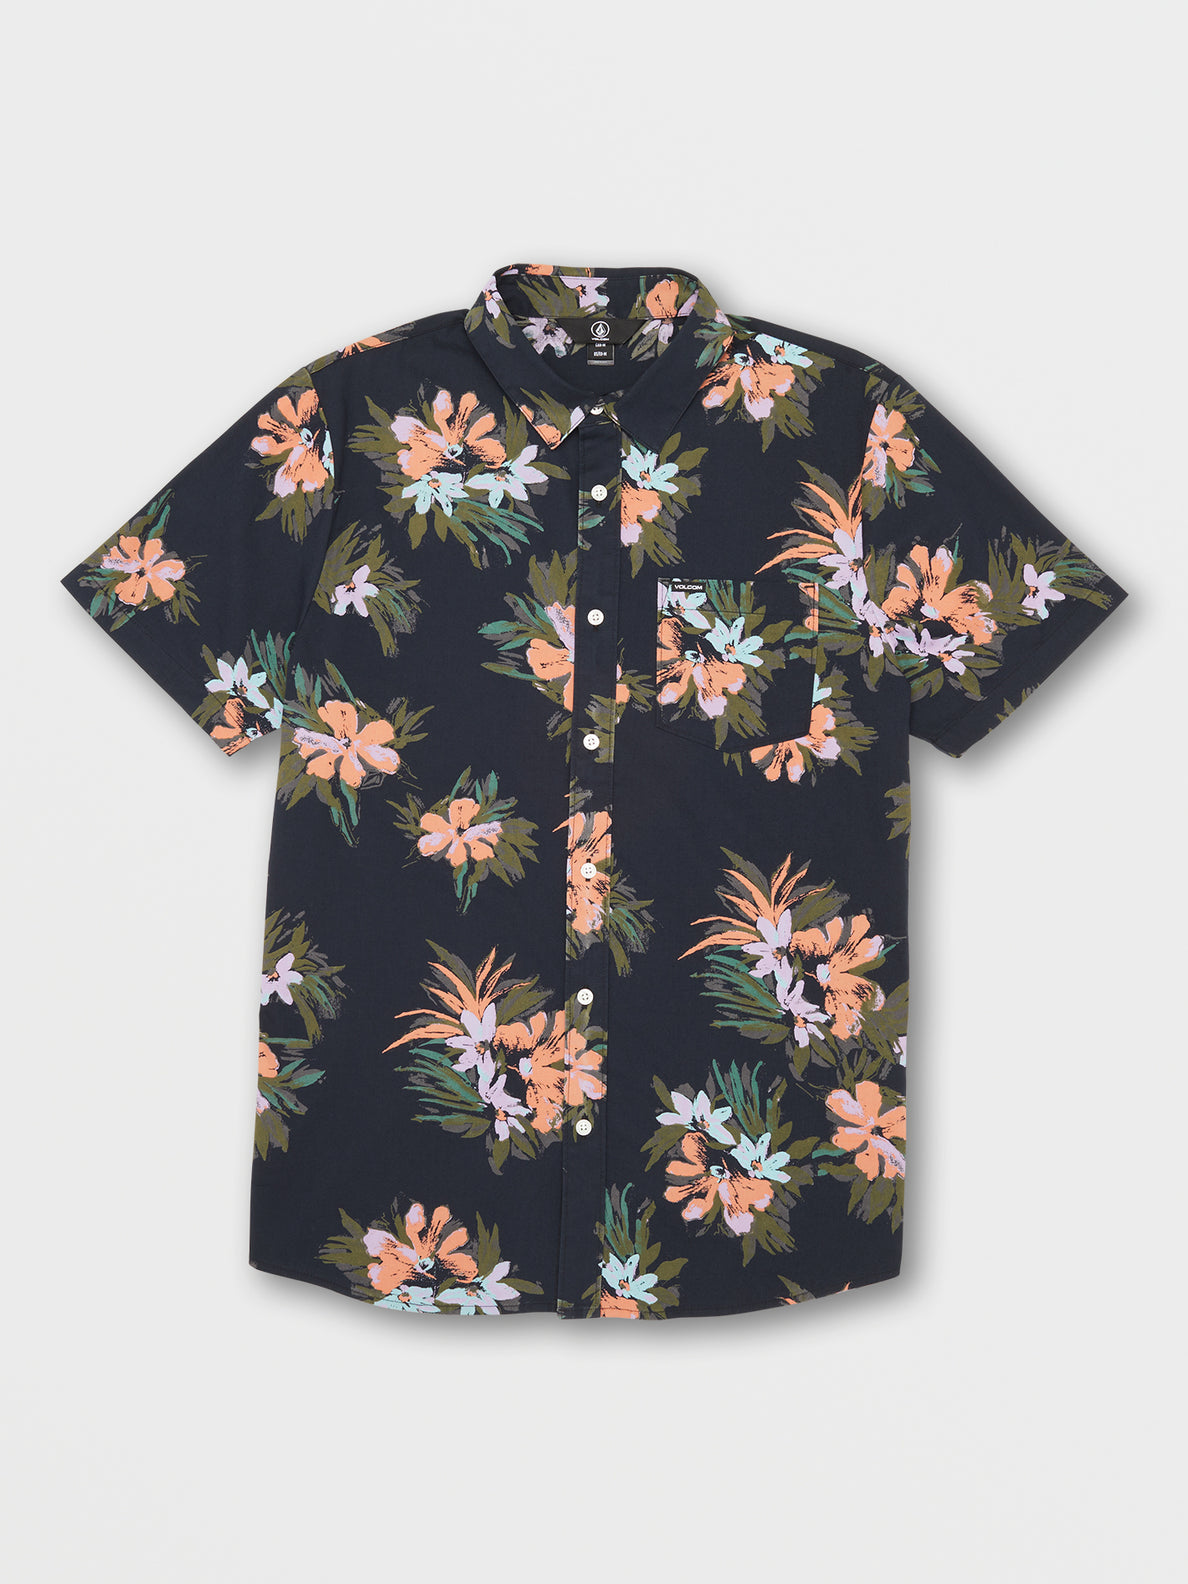 Warbler Short Sleeve Shirt - Black Floral Print